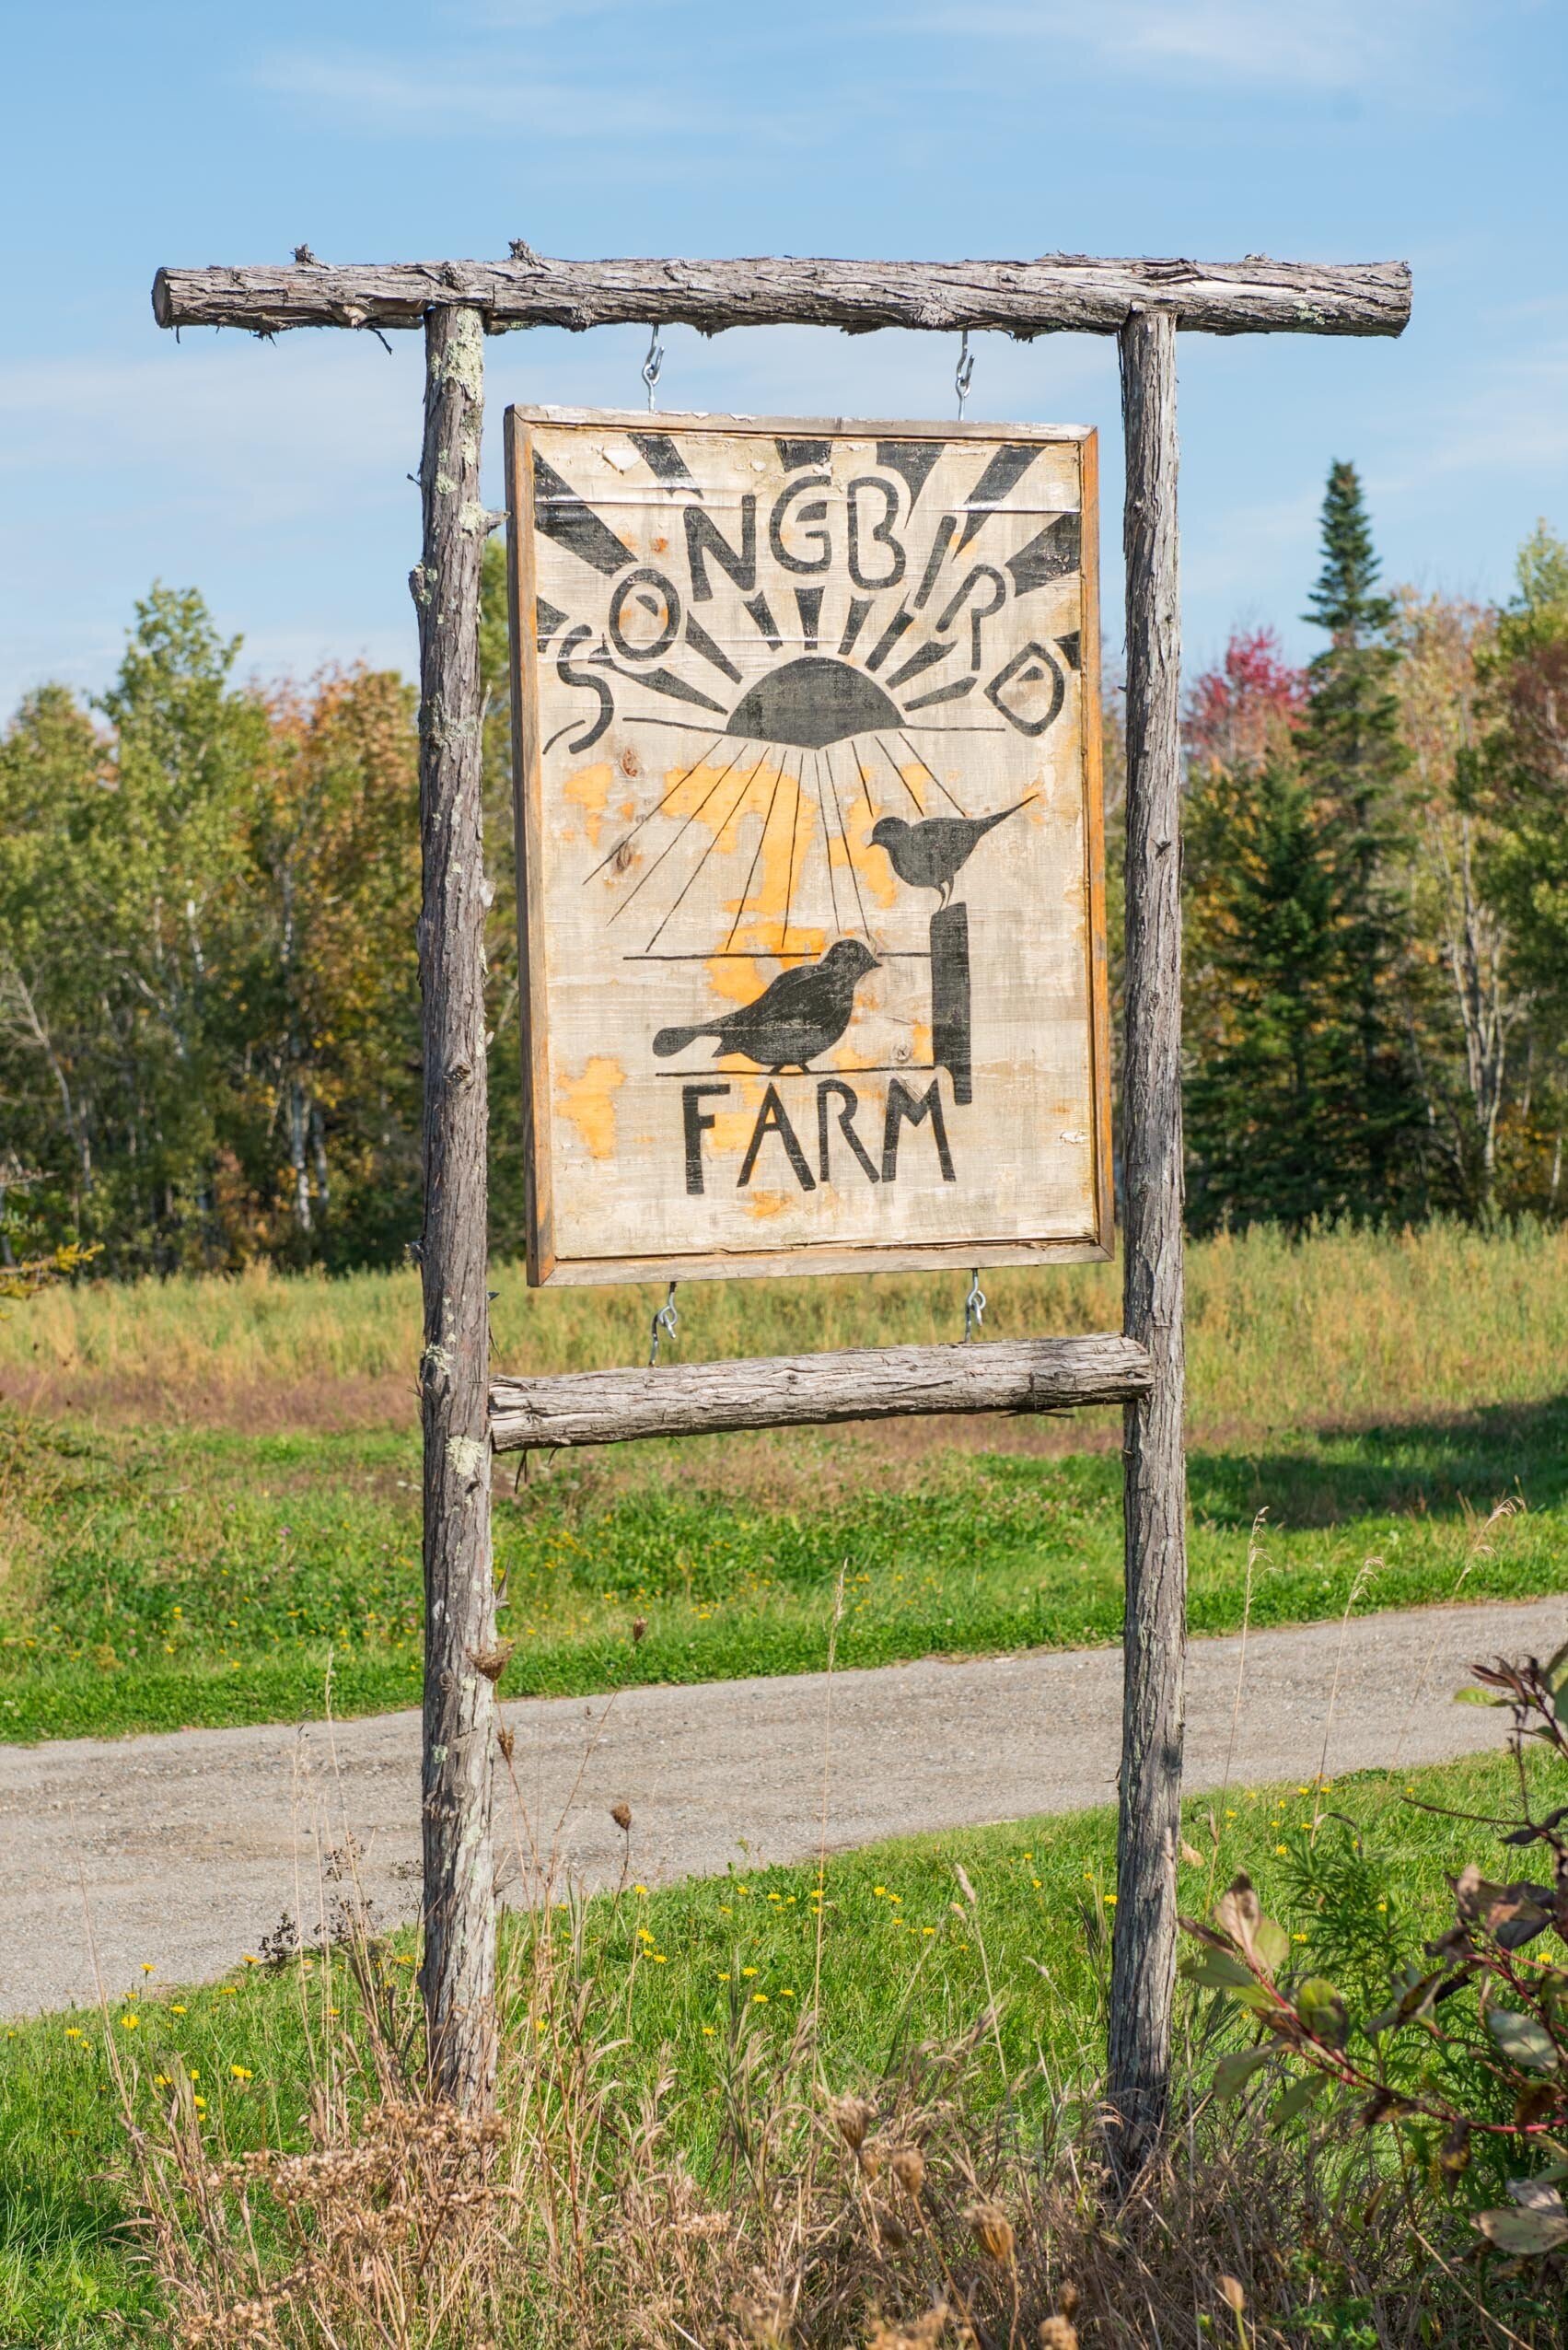 Songbird Organic Farm